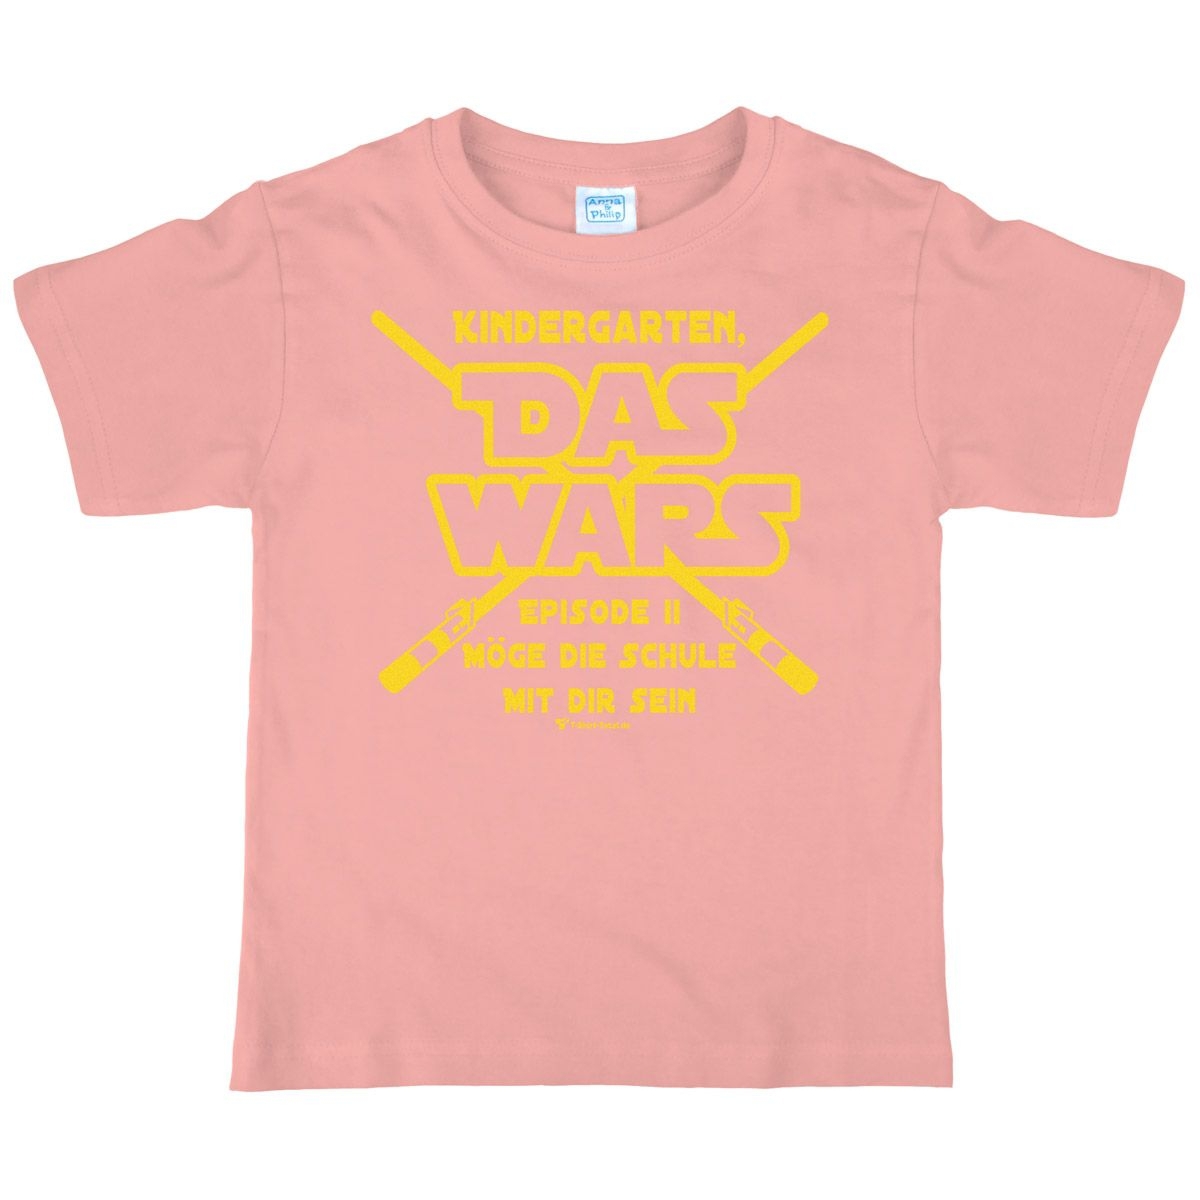 Das wars Kindergarten Kinder T-Shirt mit Namen rosa 134 / 140